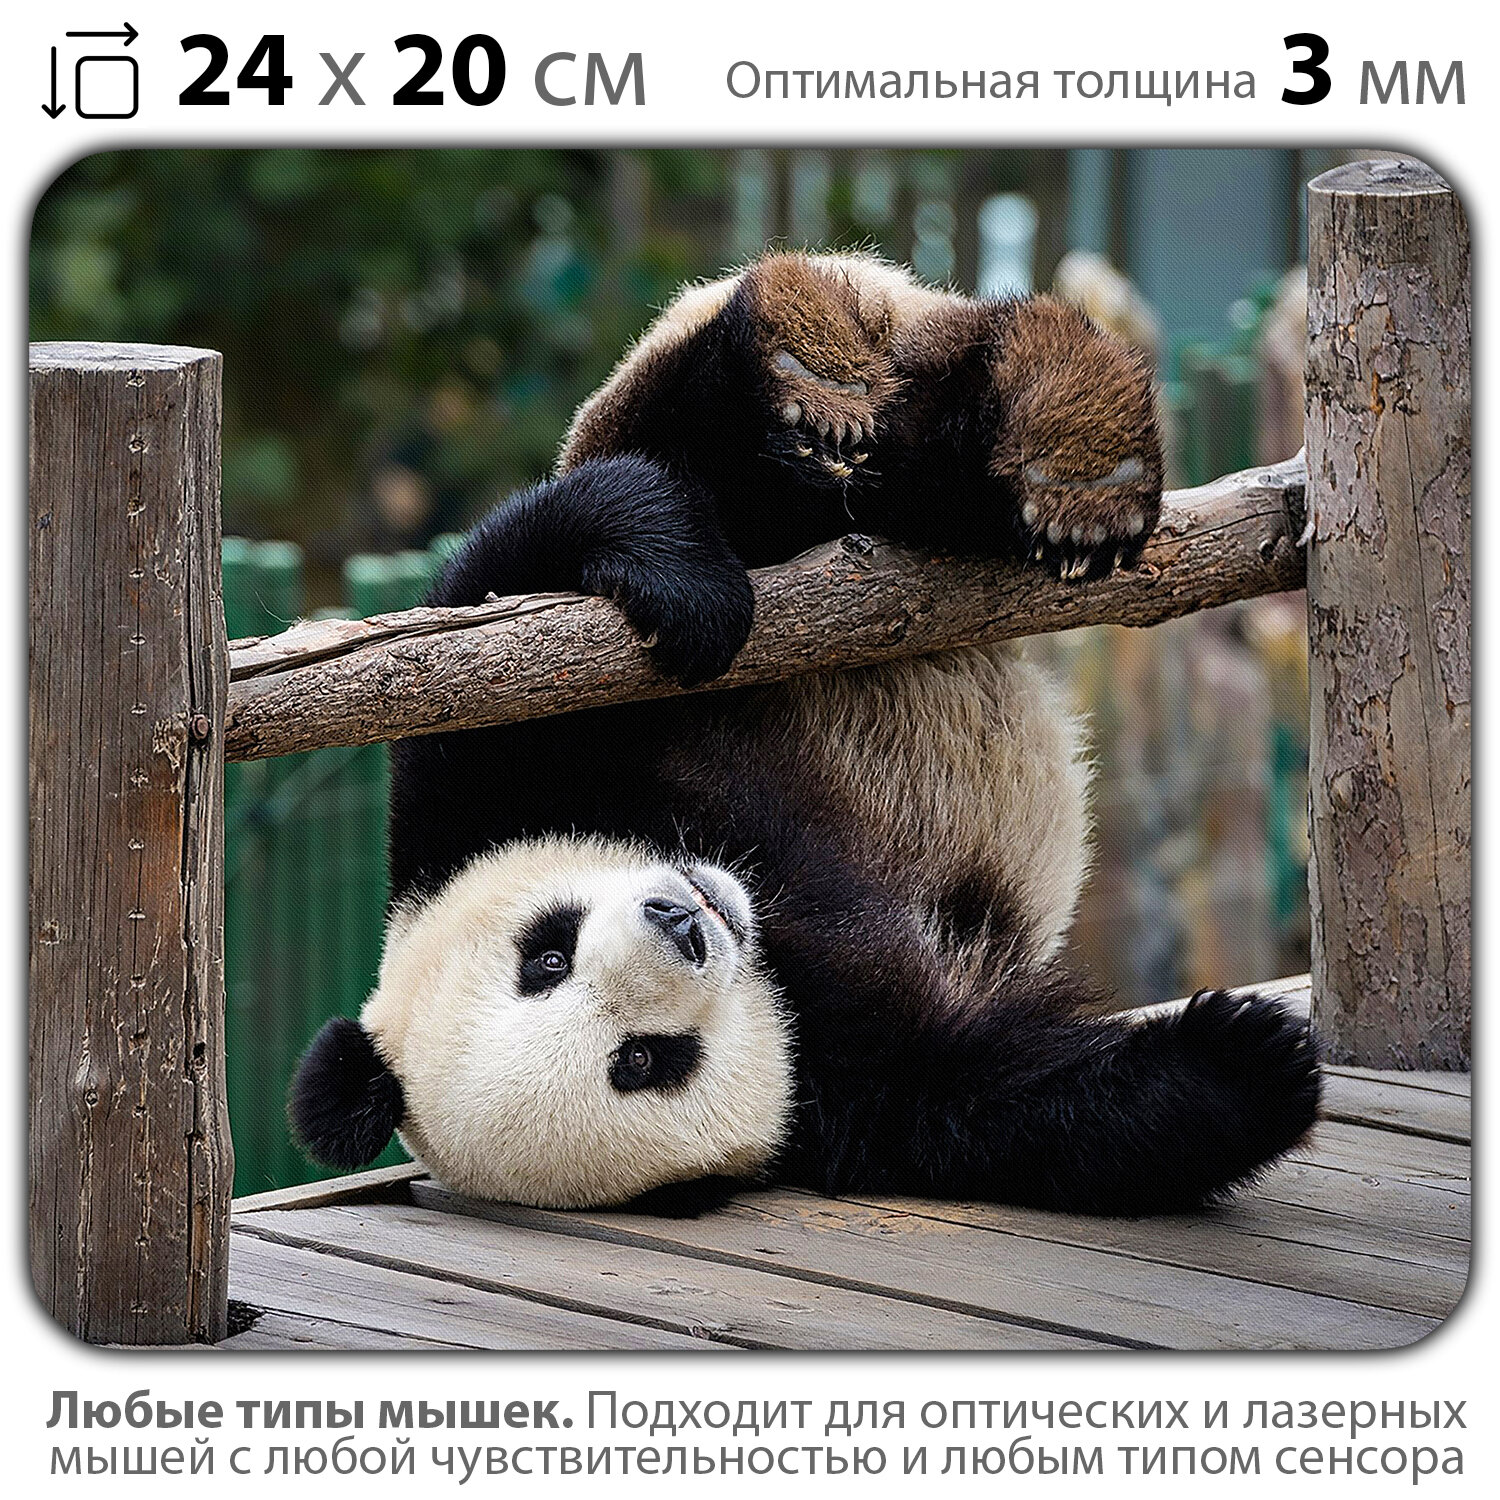 Коврик для мыши "Неуклюжий панда" (24 x 20 см x 3 мм)